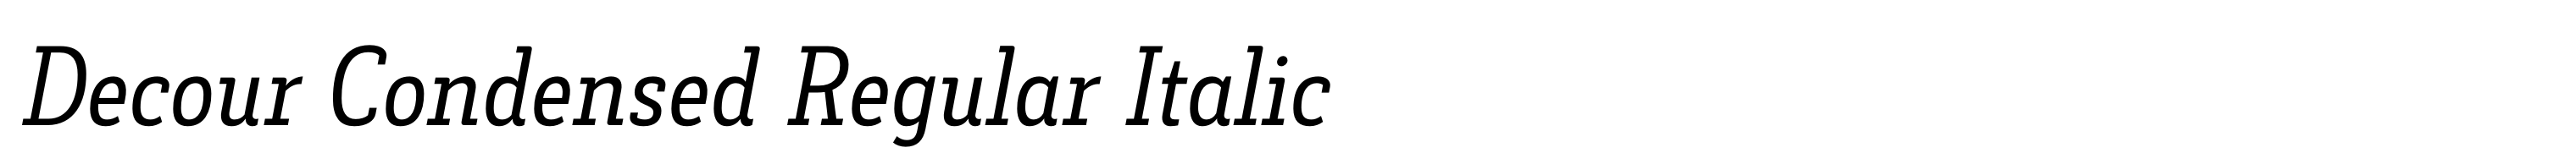 Decour Condensed Regular Italic